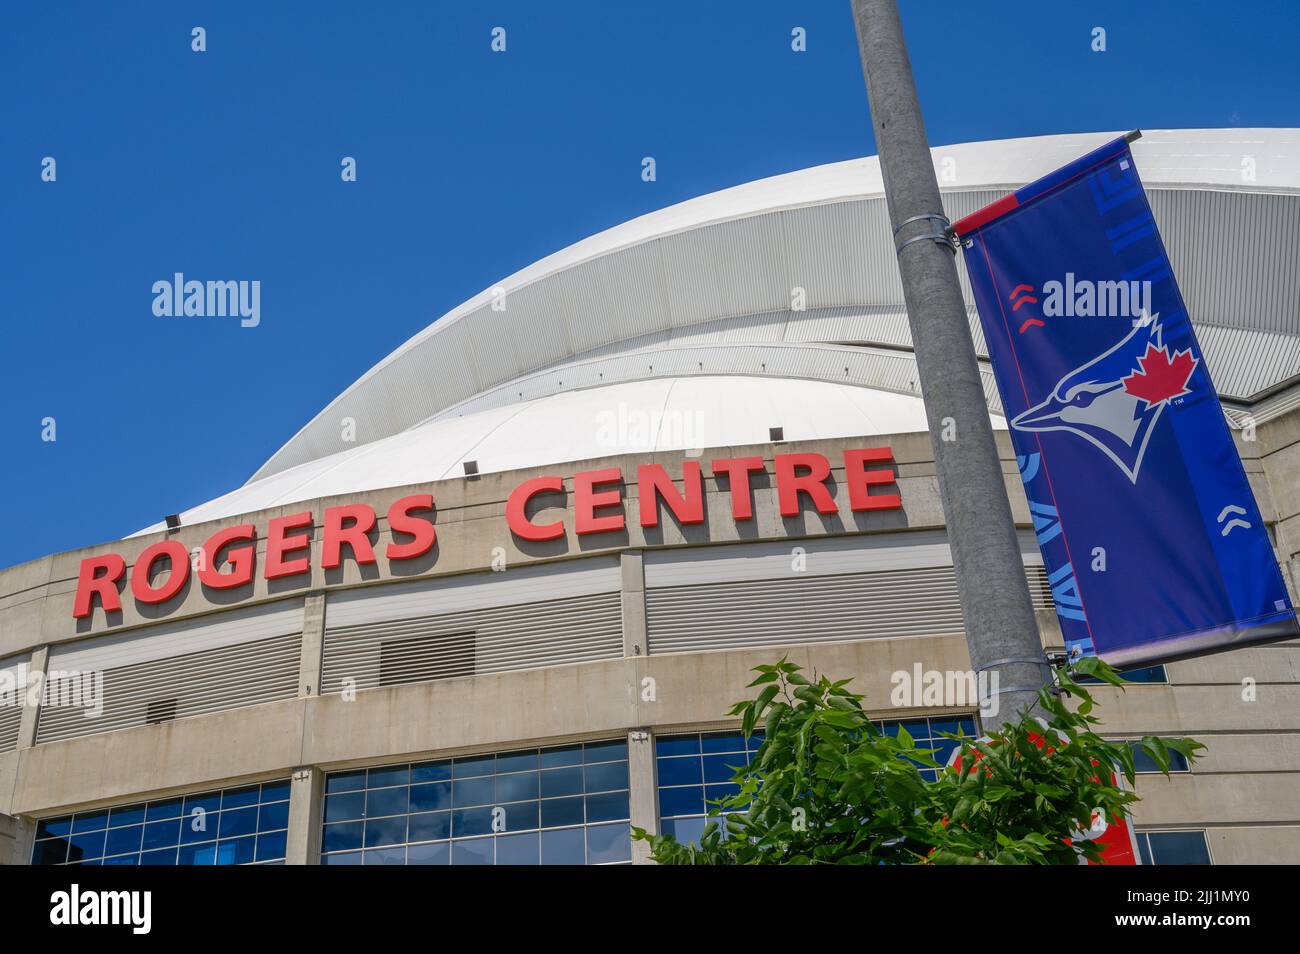 Estadio Rogers Centre con su techo abovedado retráctil, sede del equipo de béisbol Blue Jays, Toronto, Ontario, Canadá. Foto de stock